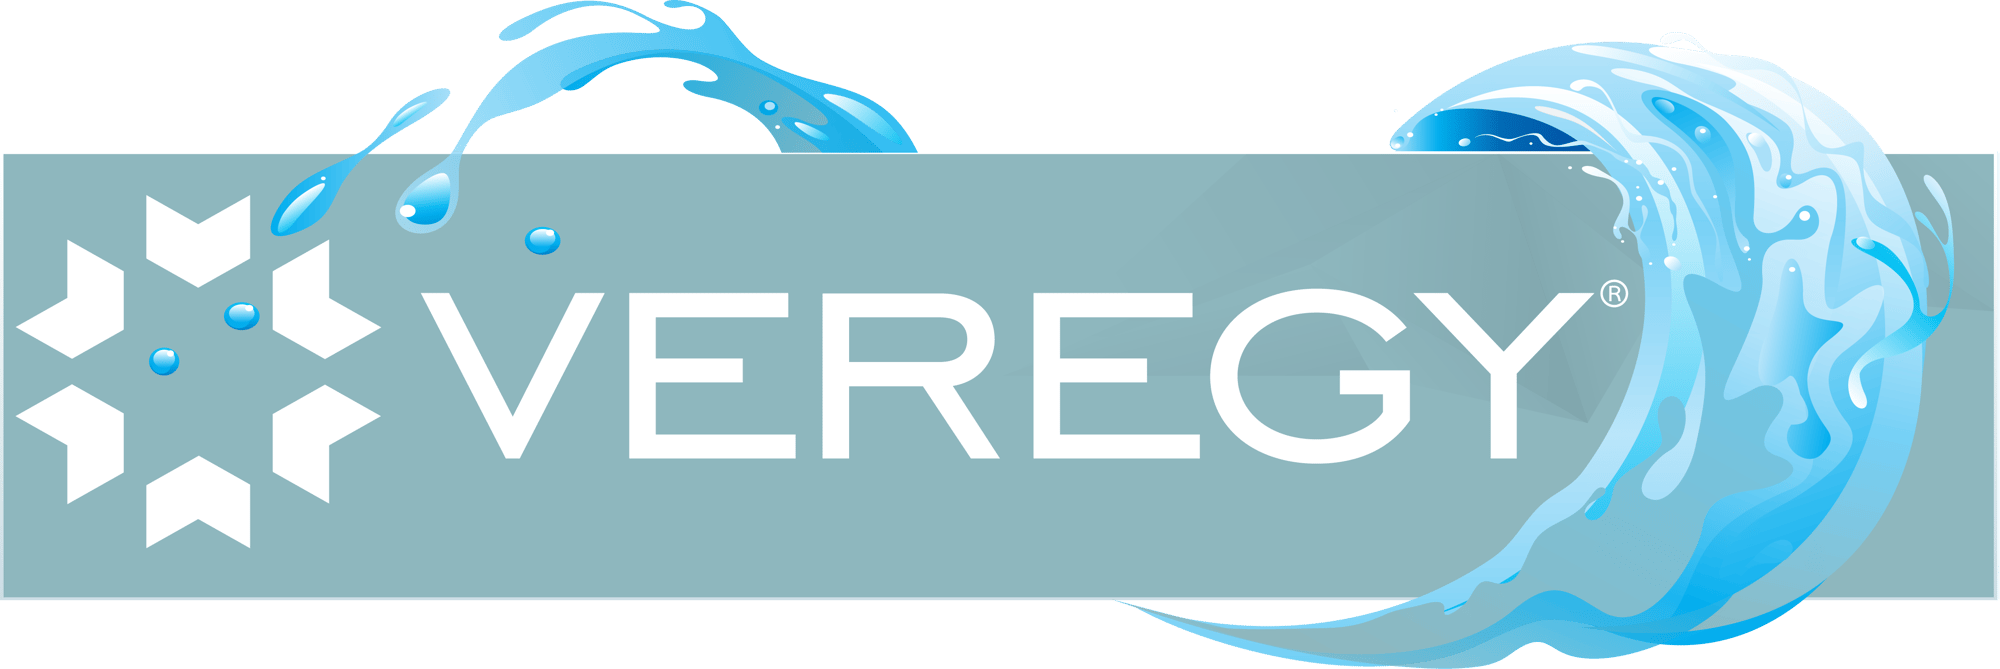 Veregy Water Logo 3